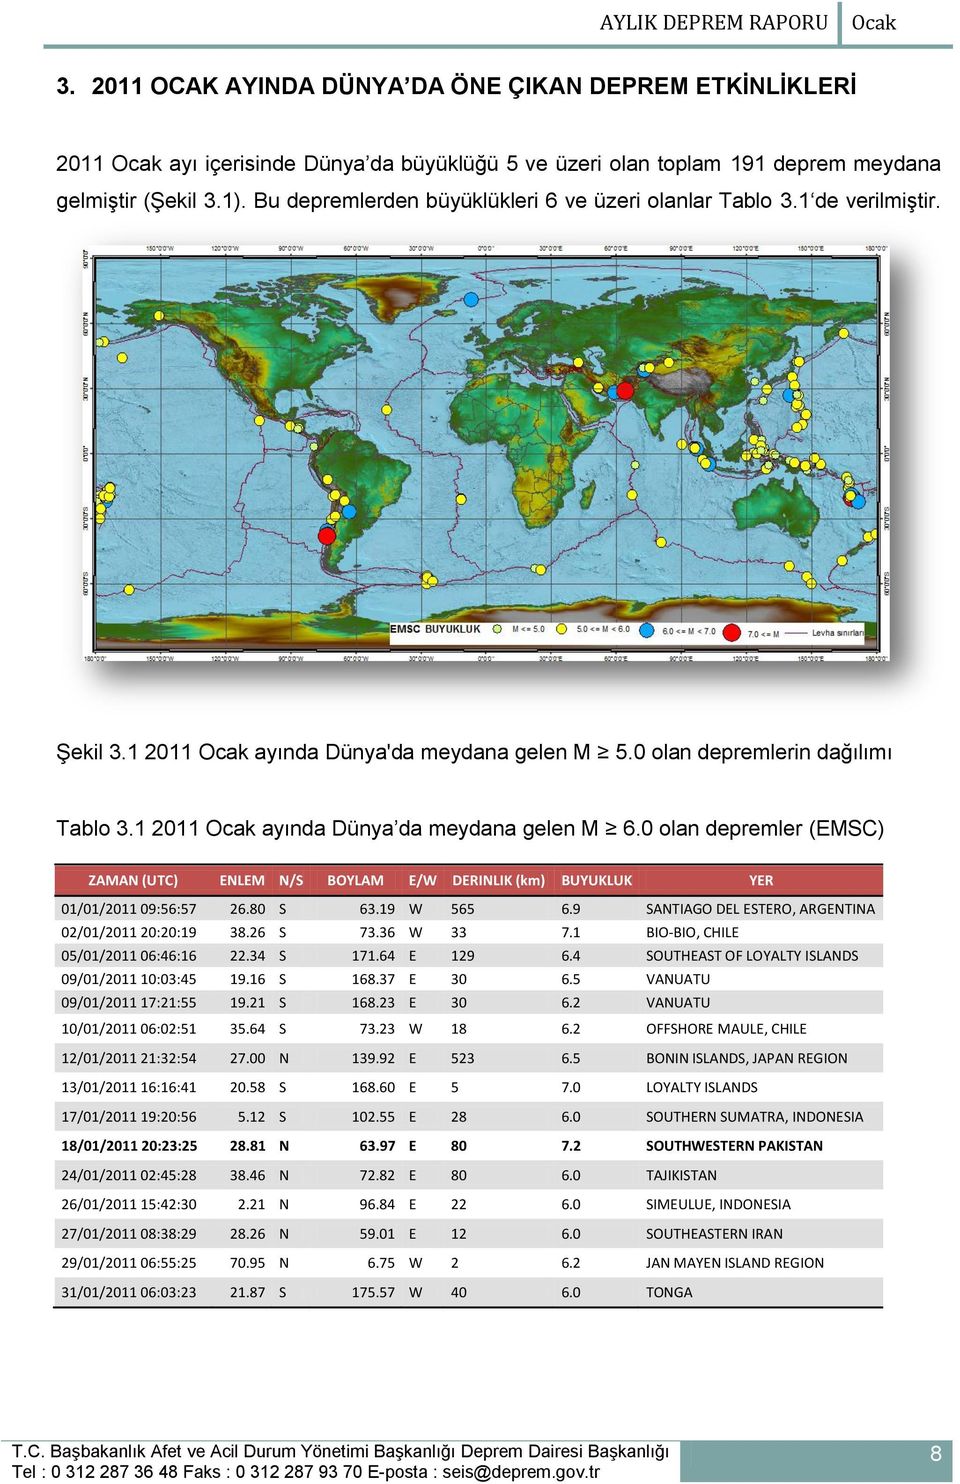 1 2011 Ocak ayında Dünya da meydana gelen M 6.0 olan depremler (EMSC) ZAMAN (UTC) ENLEM N/S BOYLAM E/W DERINLIK (km) BUYUKLUK YER 01/01/2011 09:56:57 26.80 S 63.19 W 565 6.